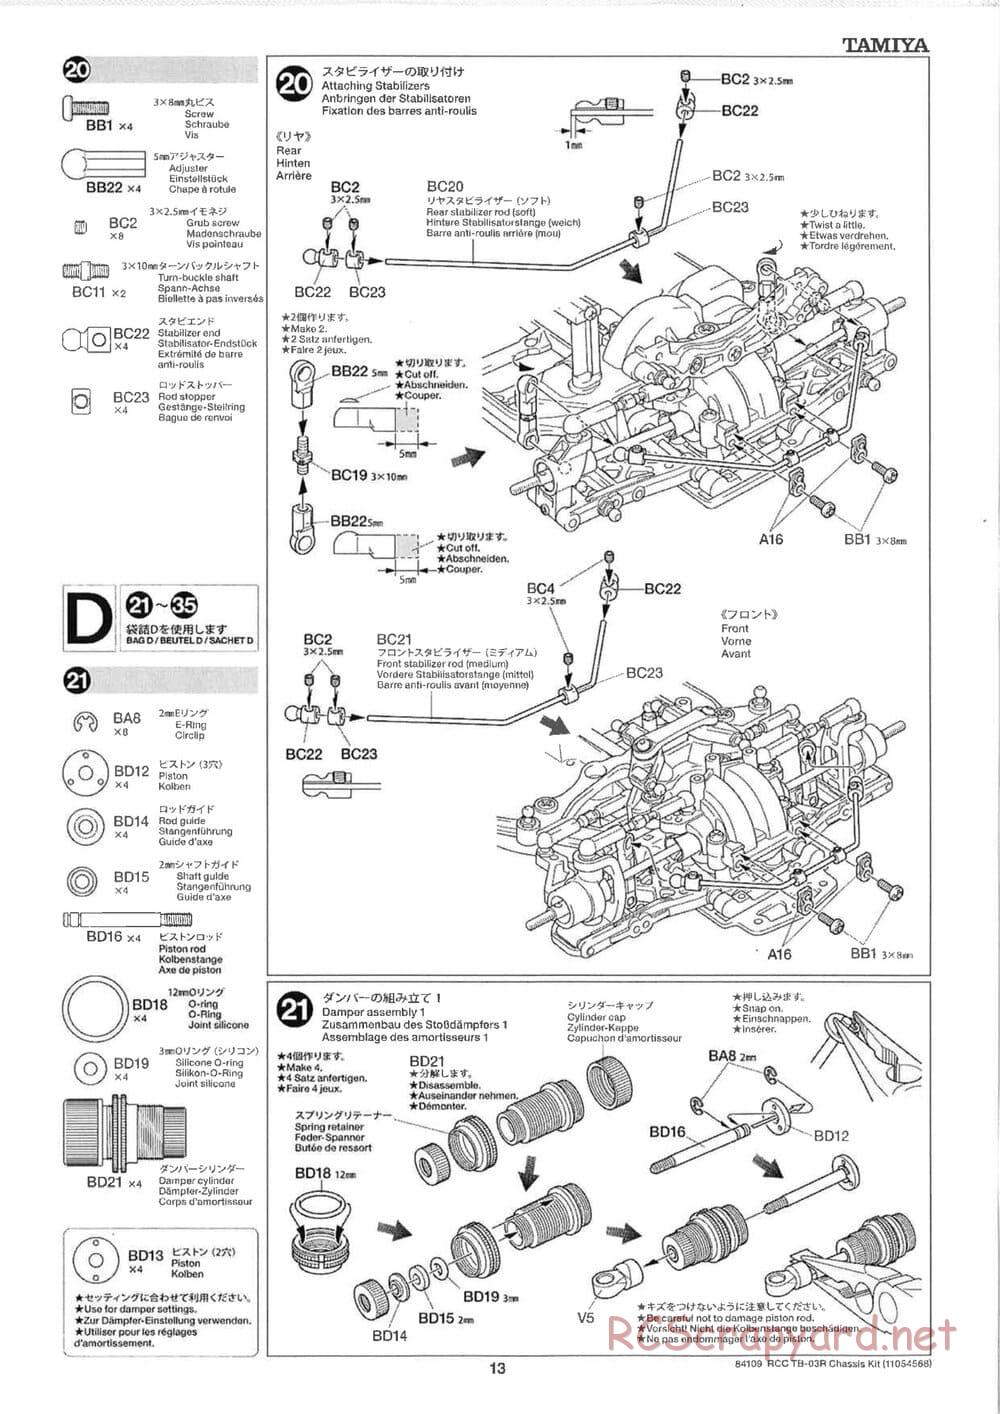 Tamiya - TB-03R Chassis - Manual - Page 13